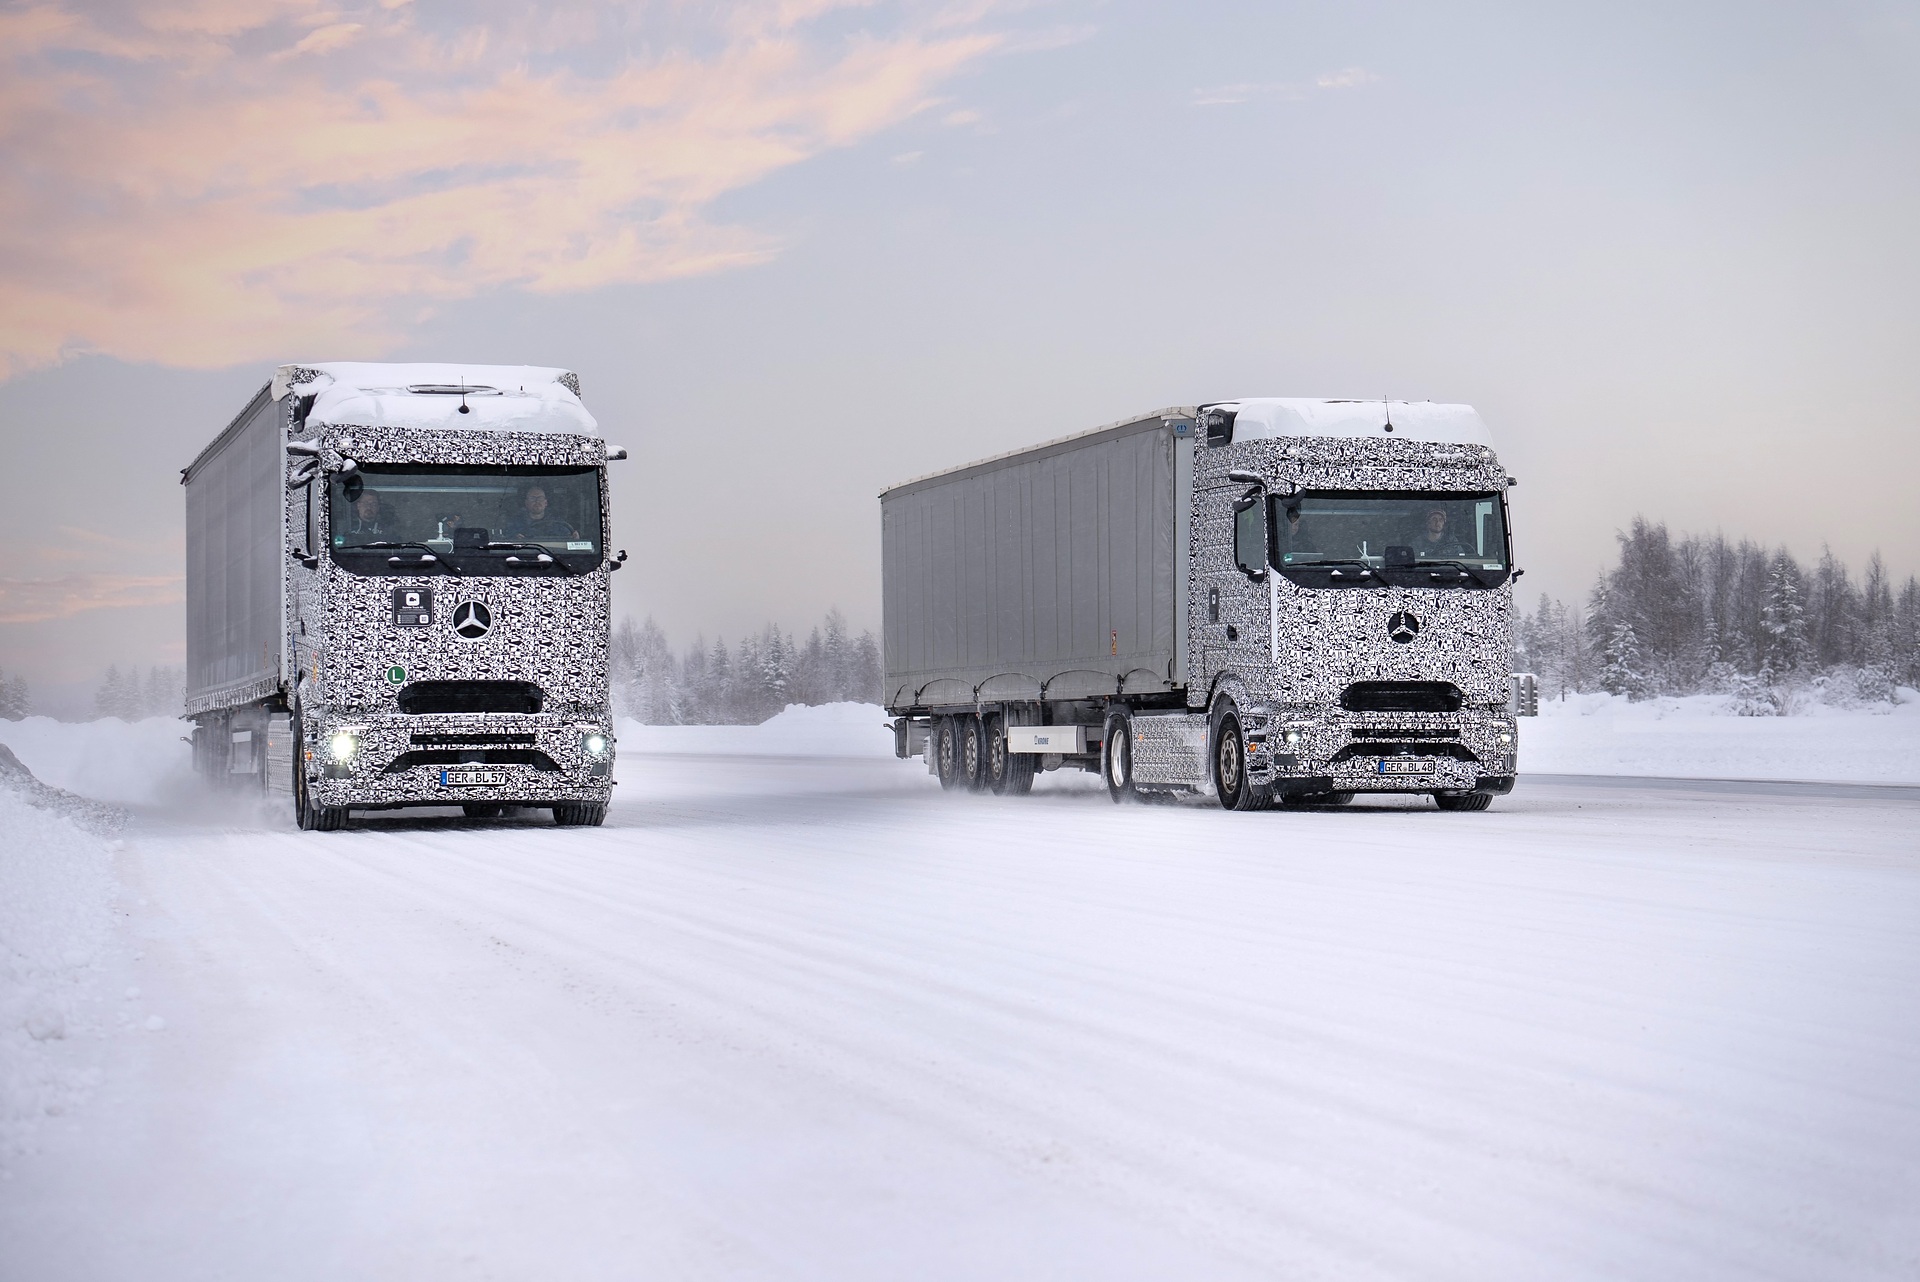 Mercedes-Benz Trucks schließt in Finnland letzte Wintererprobung des eActros 600 vor Serienstart erfolgreich ab